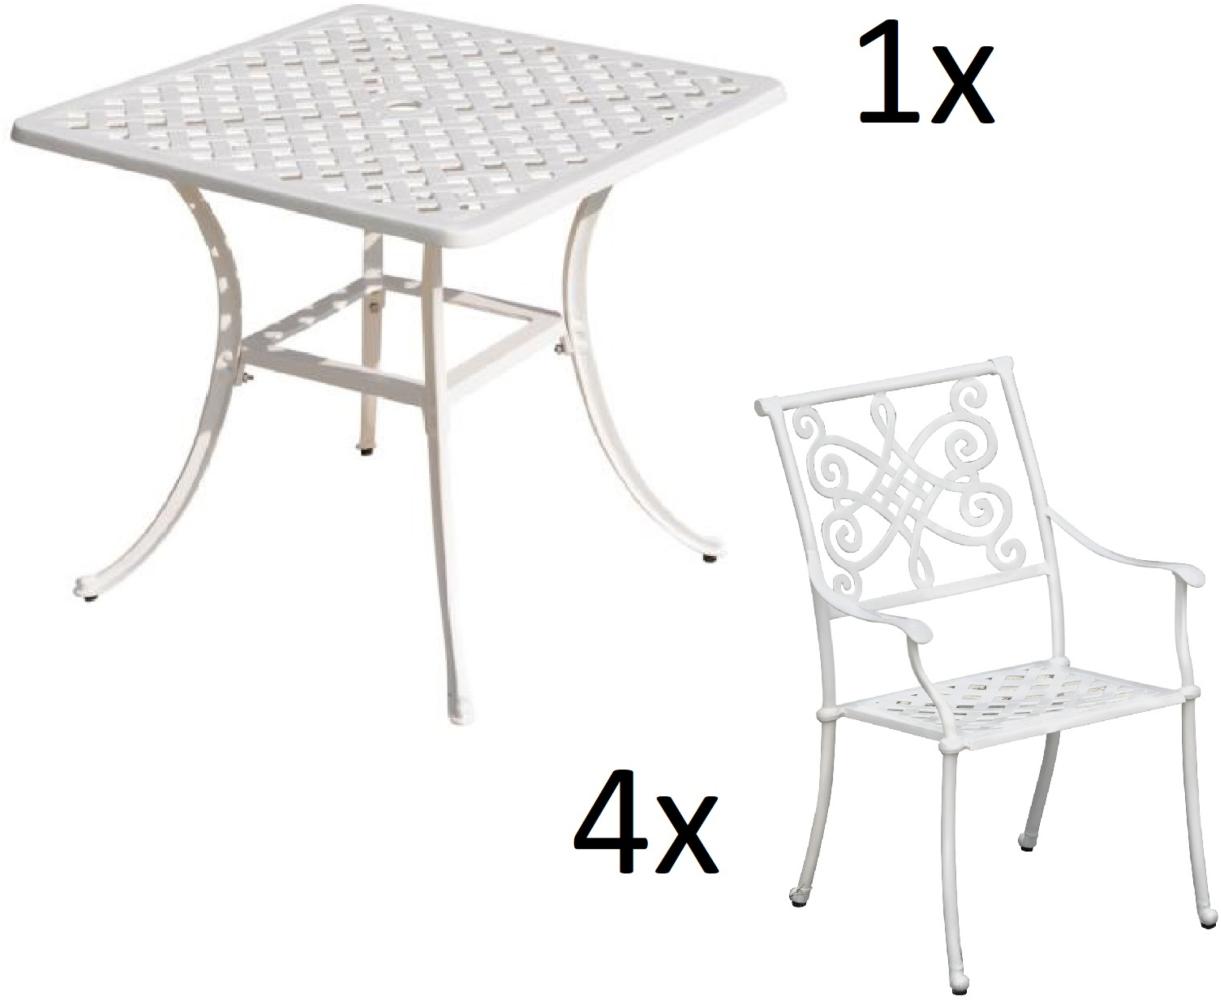 Inko 5-teilige Sitzgruppe Aluminium Guss weiß Tisch 80x80cm mit 4 Sesseln Tisch 80x80 cm mit 4x Sessel Nexus Bild 1